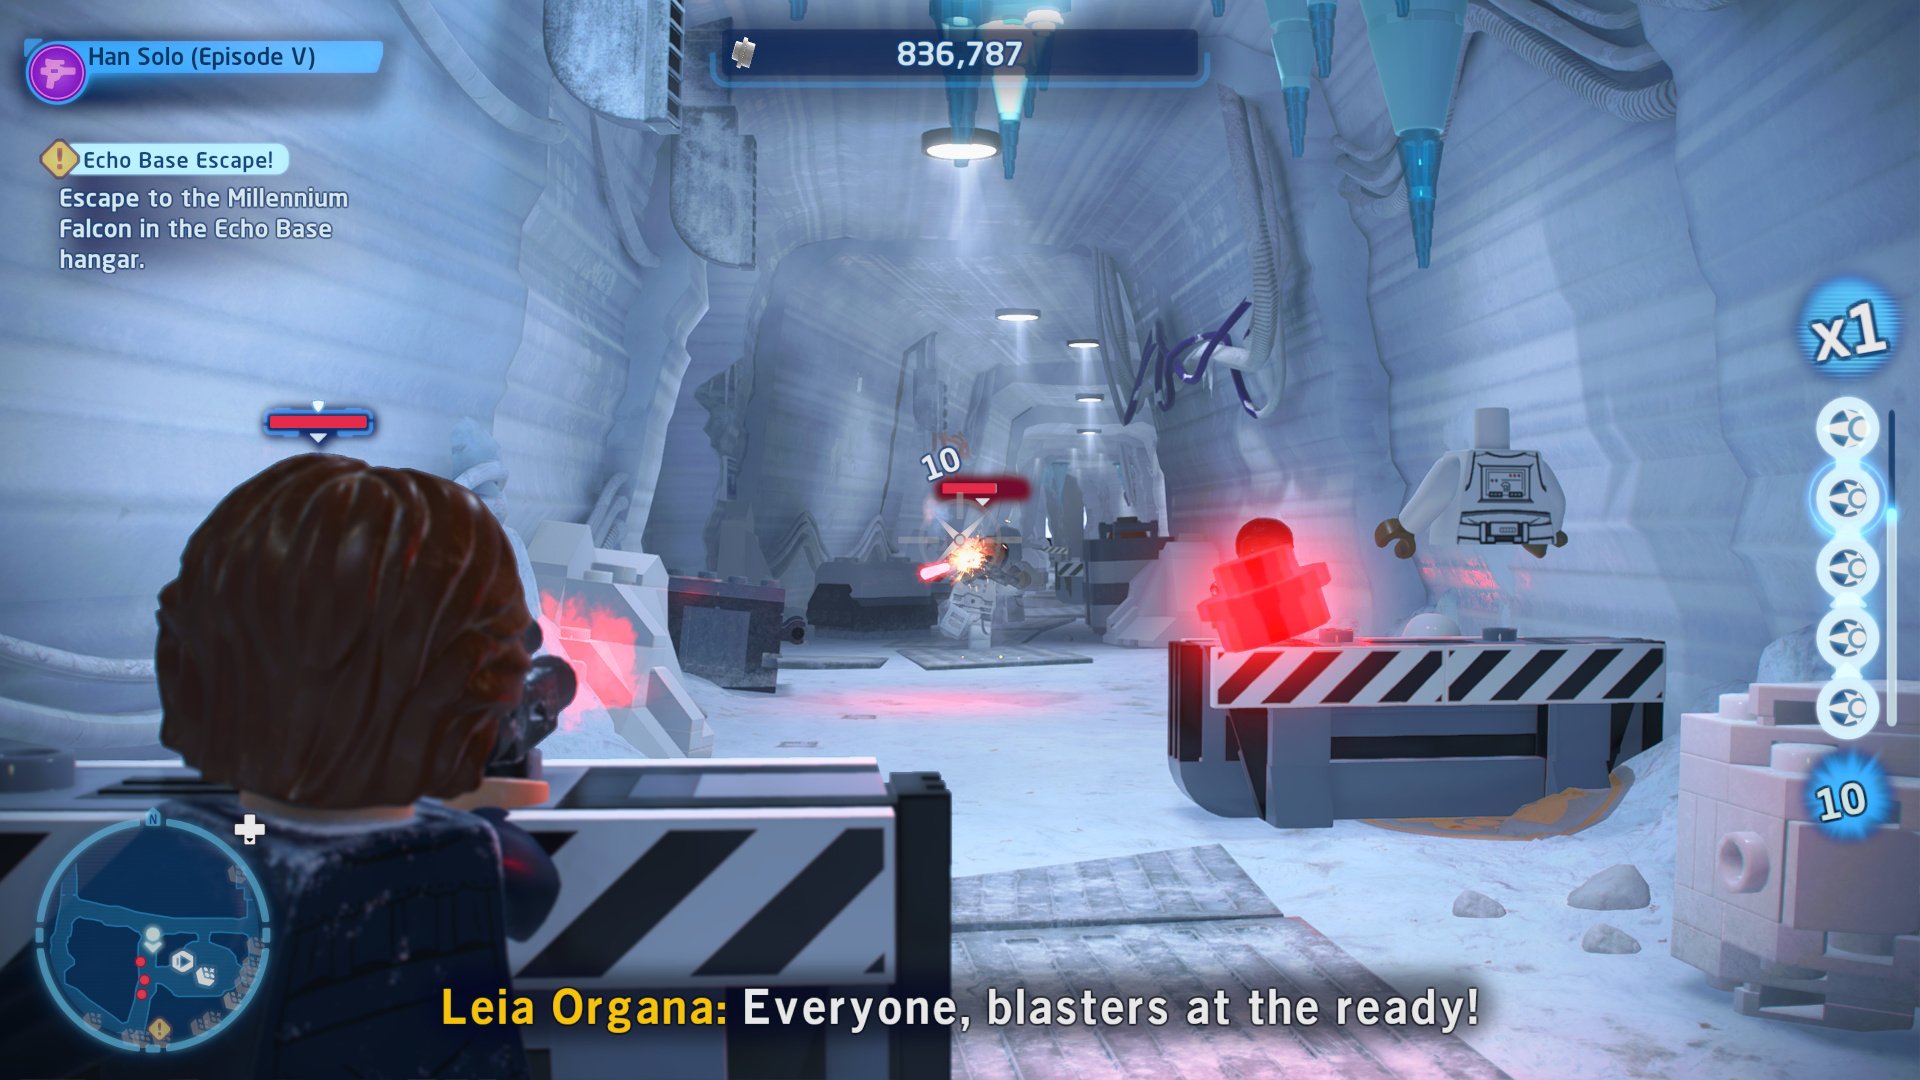 No online co-op mode for LEGO Star Wars: The Skywalker Saga